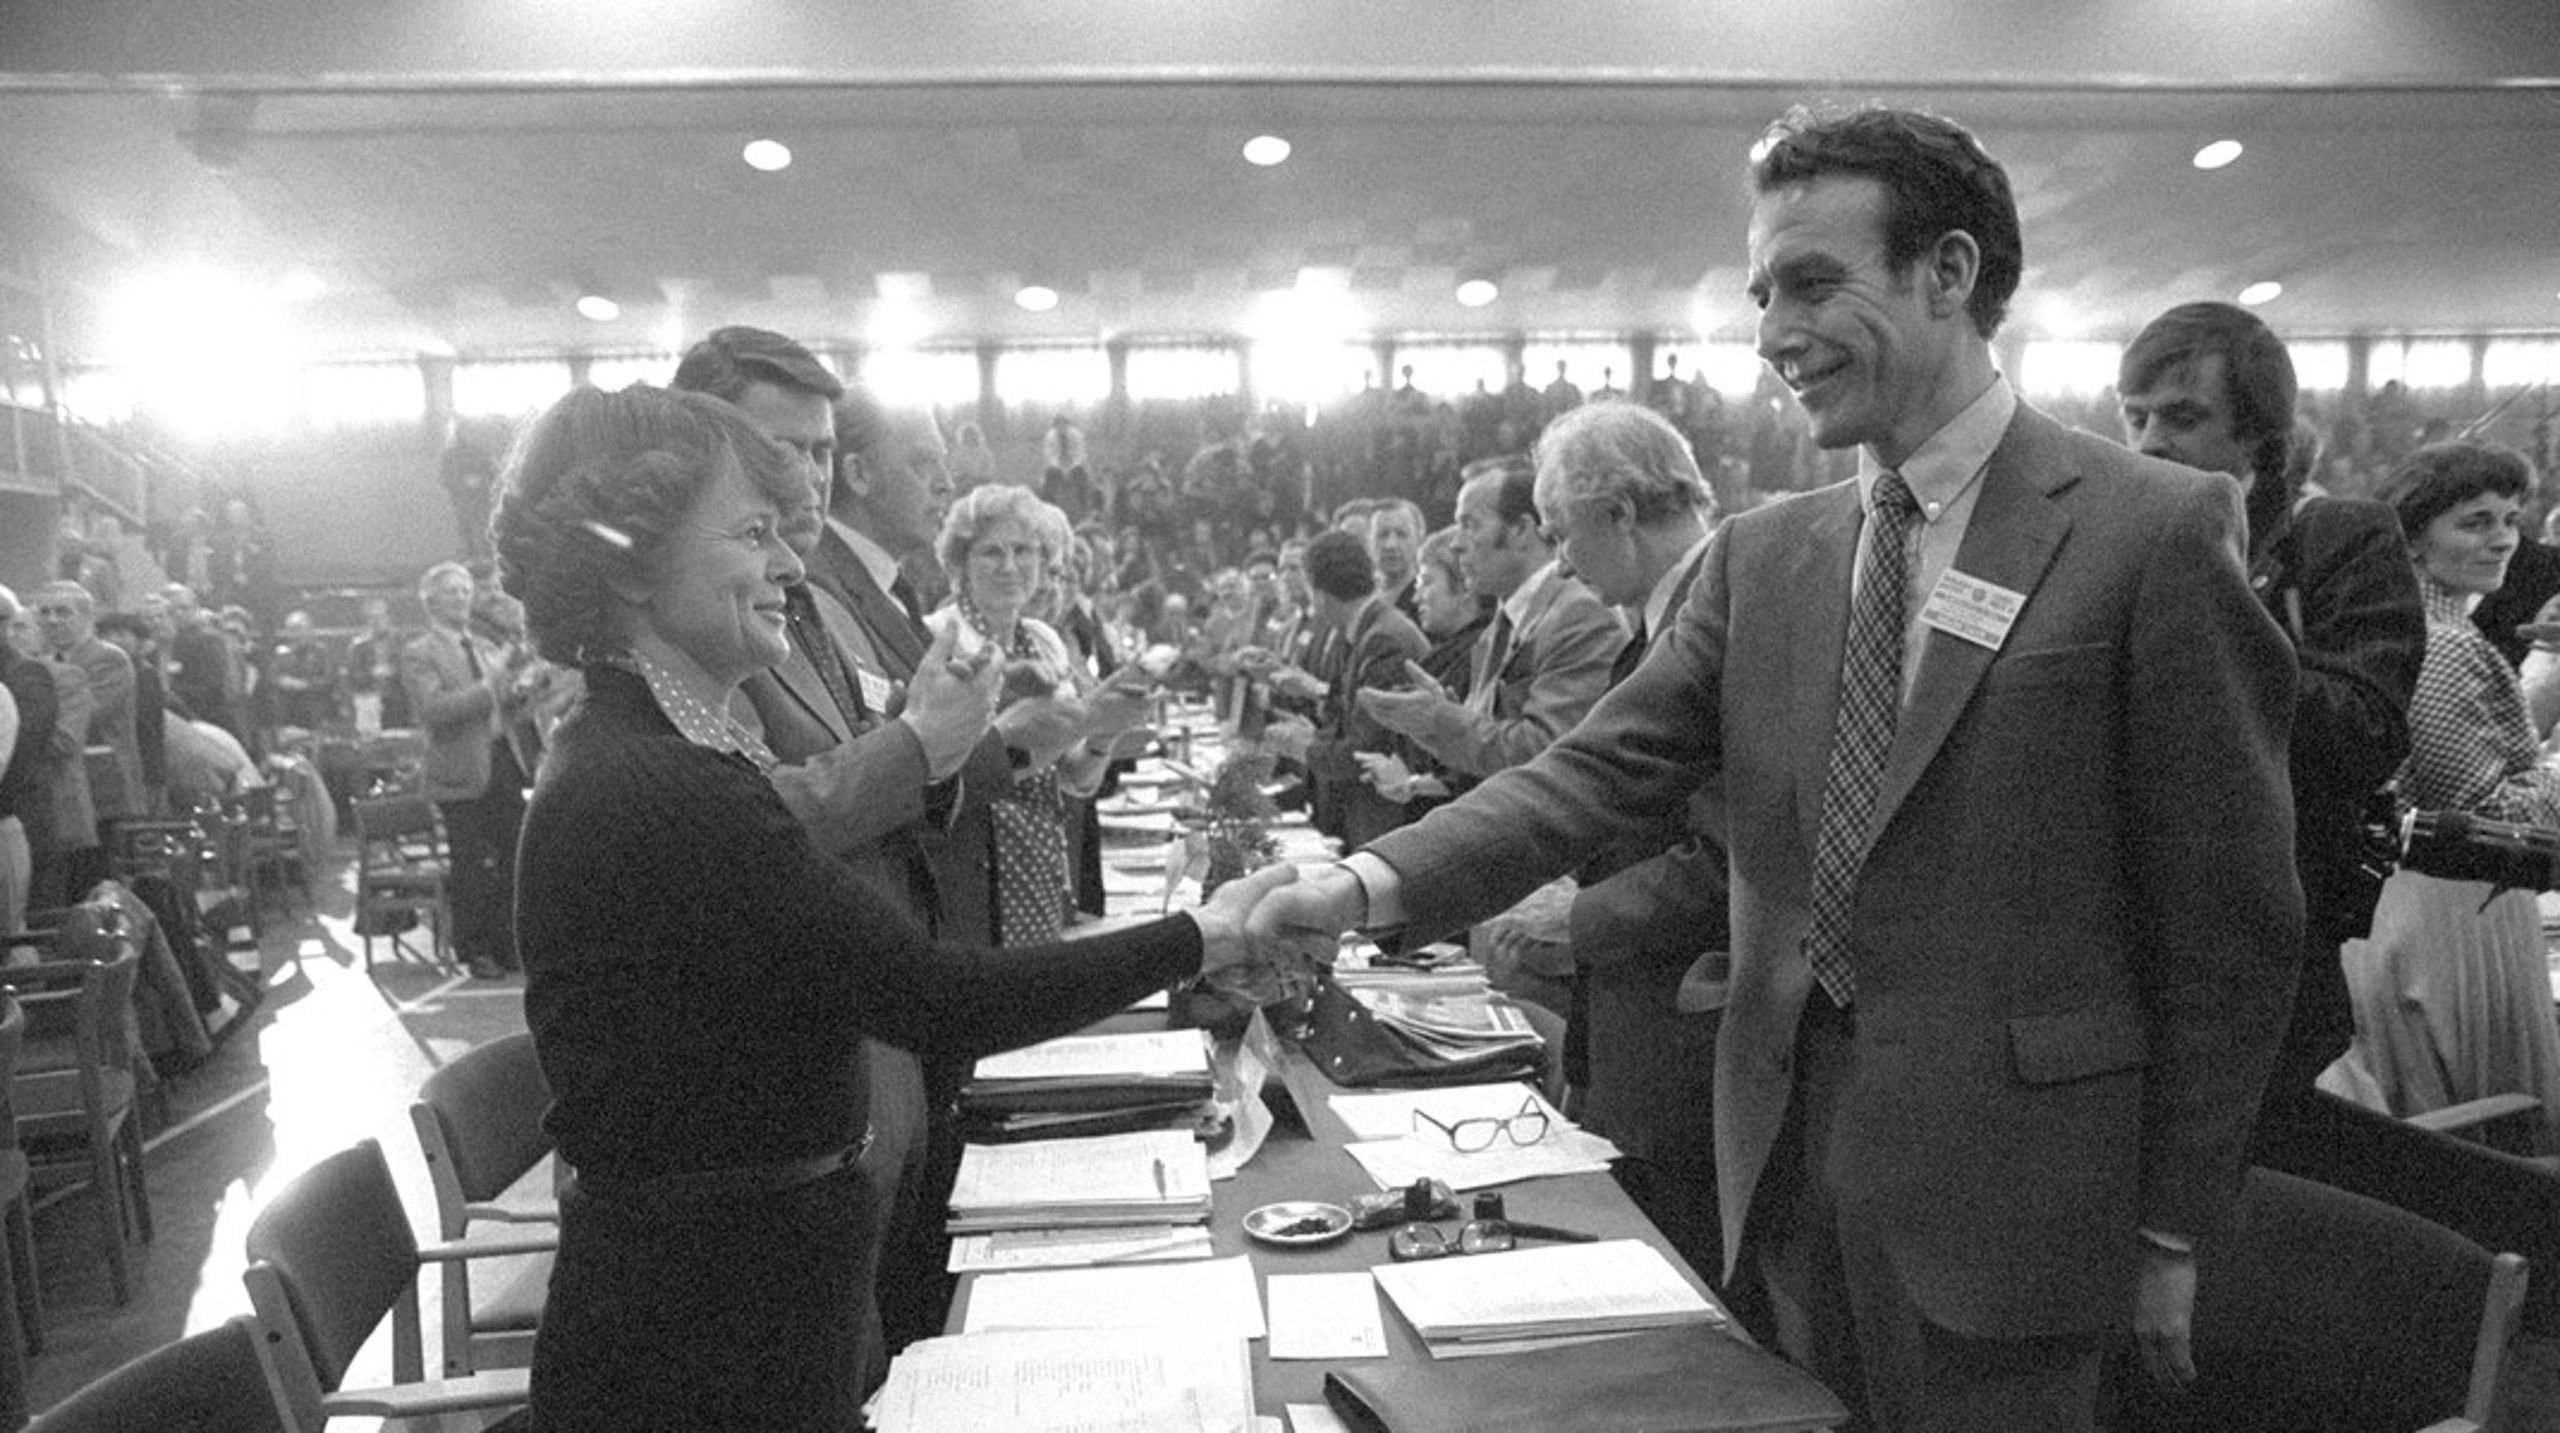 Ved Arbeiderpartiets landsmøte i 1981 står det klart at Reiulf Steen ikke ønsker å forsette som formann. Gro Harlem Brundtland blir valgt til formann, og har dermed overtatt to av politikkens mektigste posisjoner.